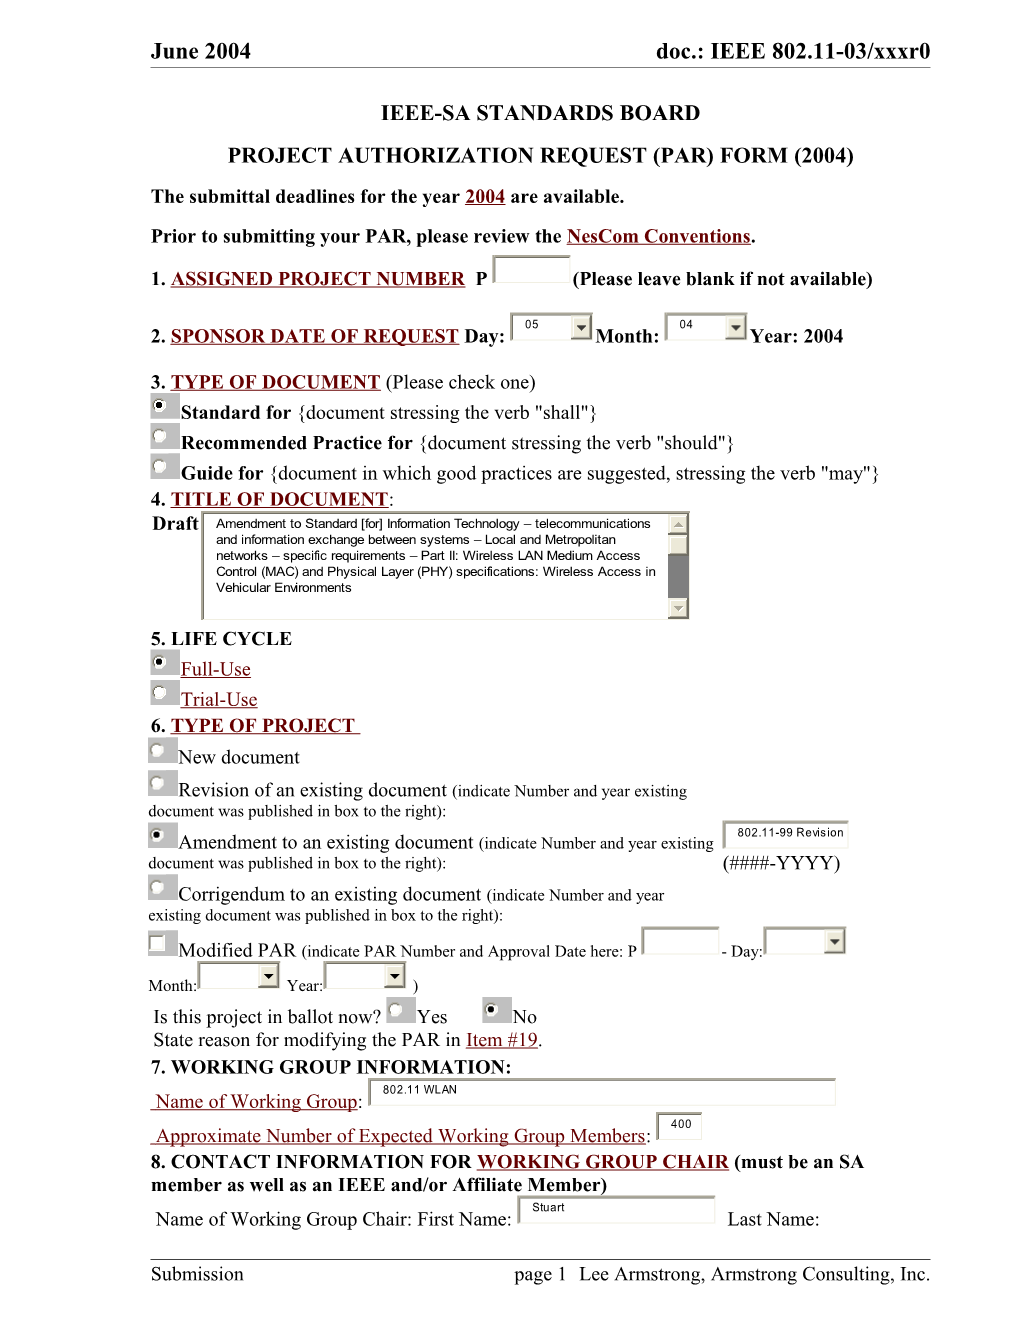 Project Authorization Request (Par) Form (2004)